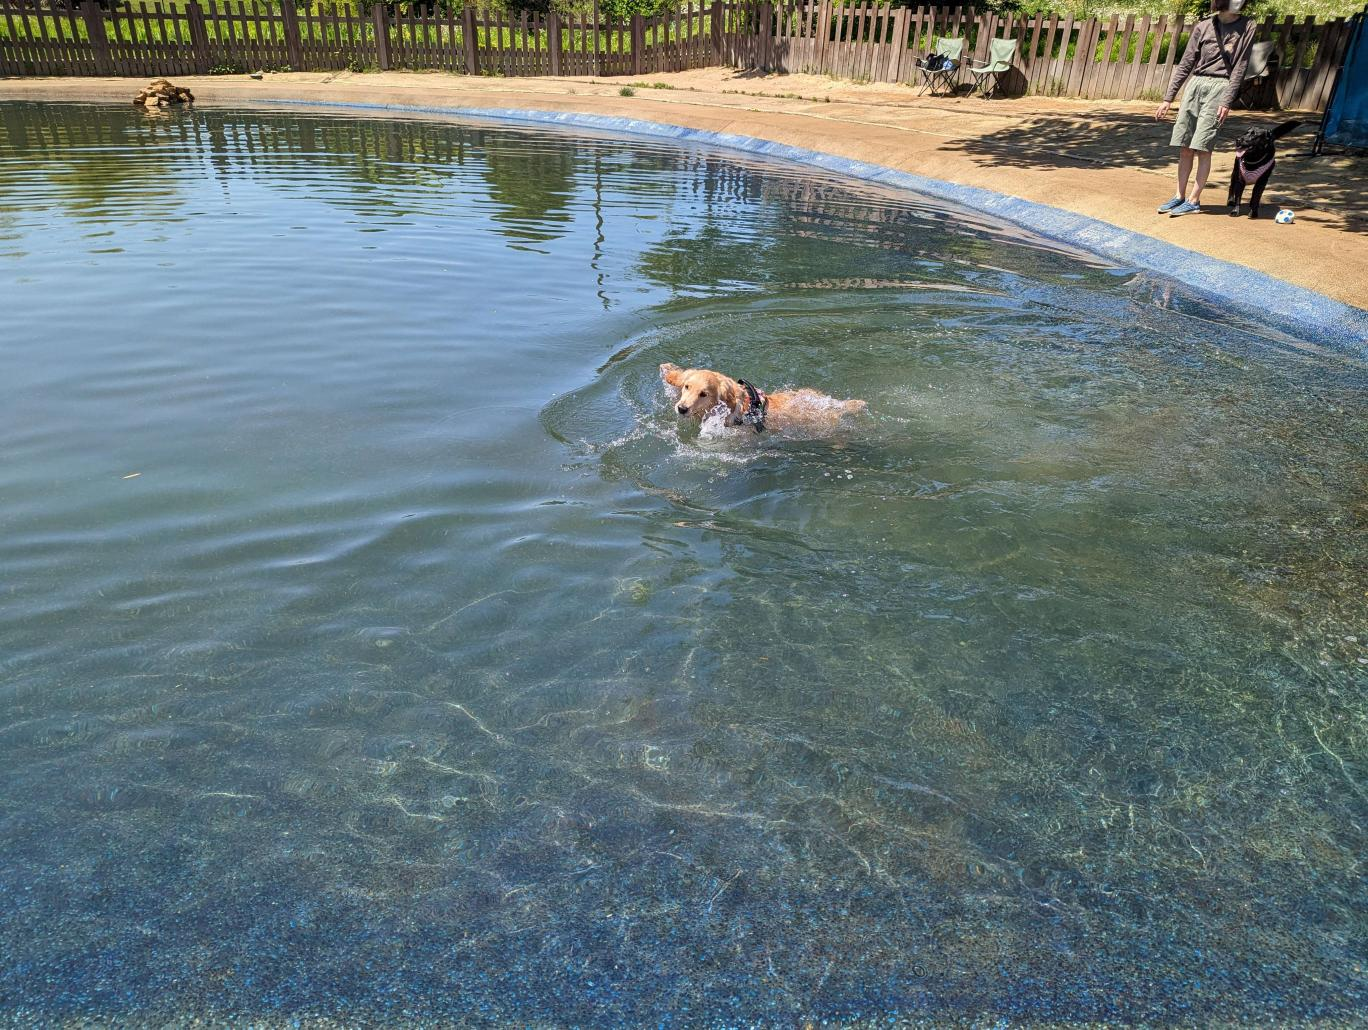 ゴールデンレトリーバーが広い犬用のプールで泳いでいる様子